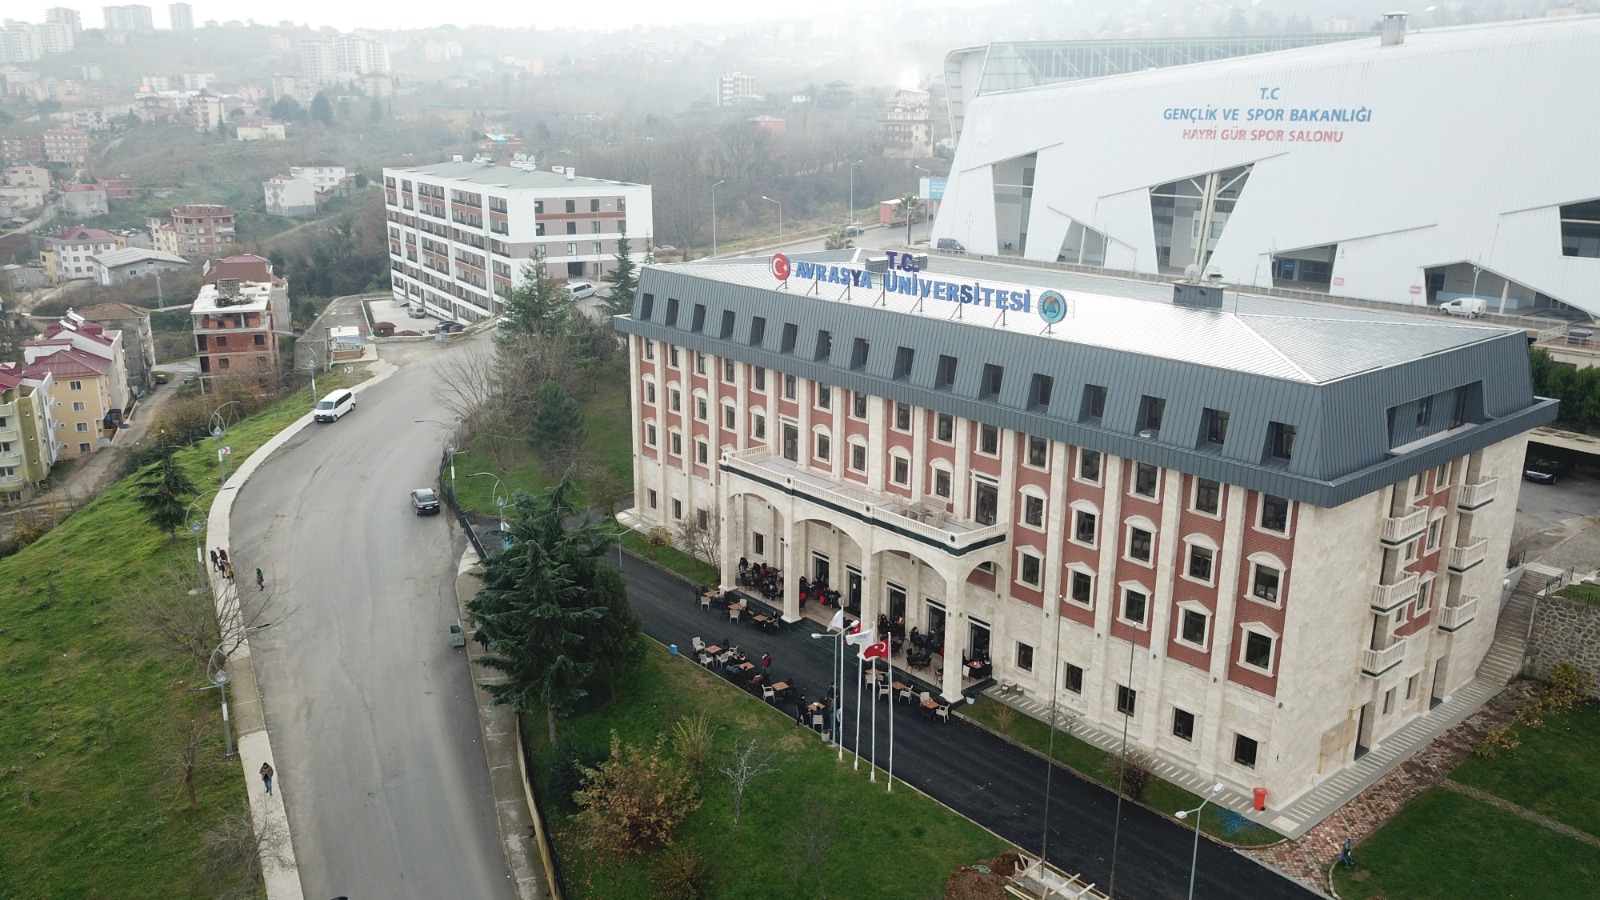 Avrasya University